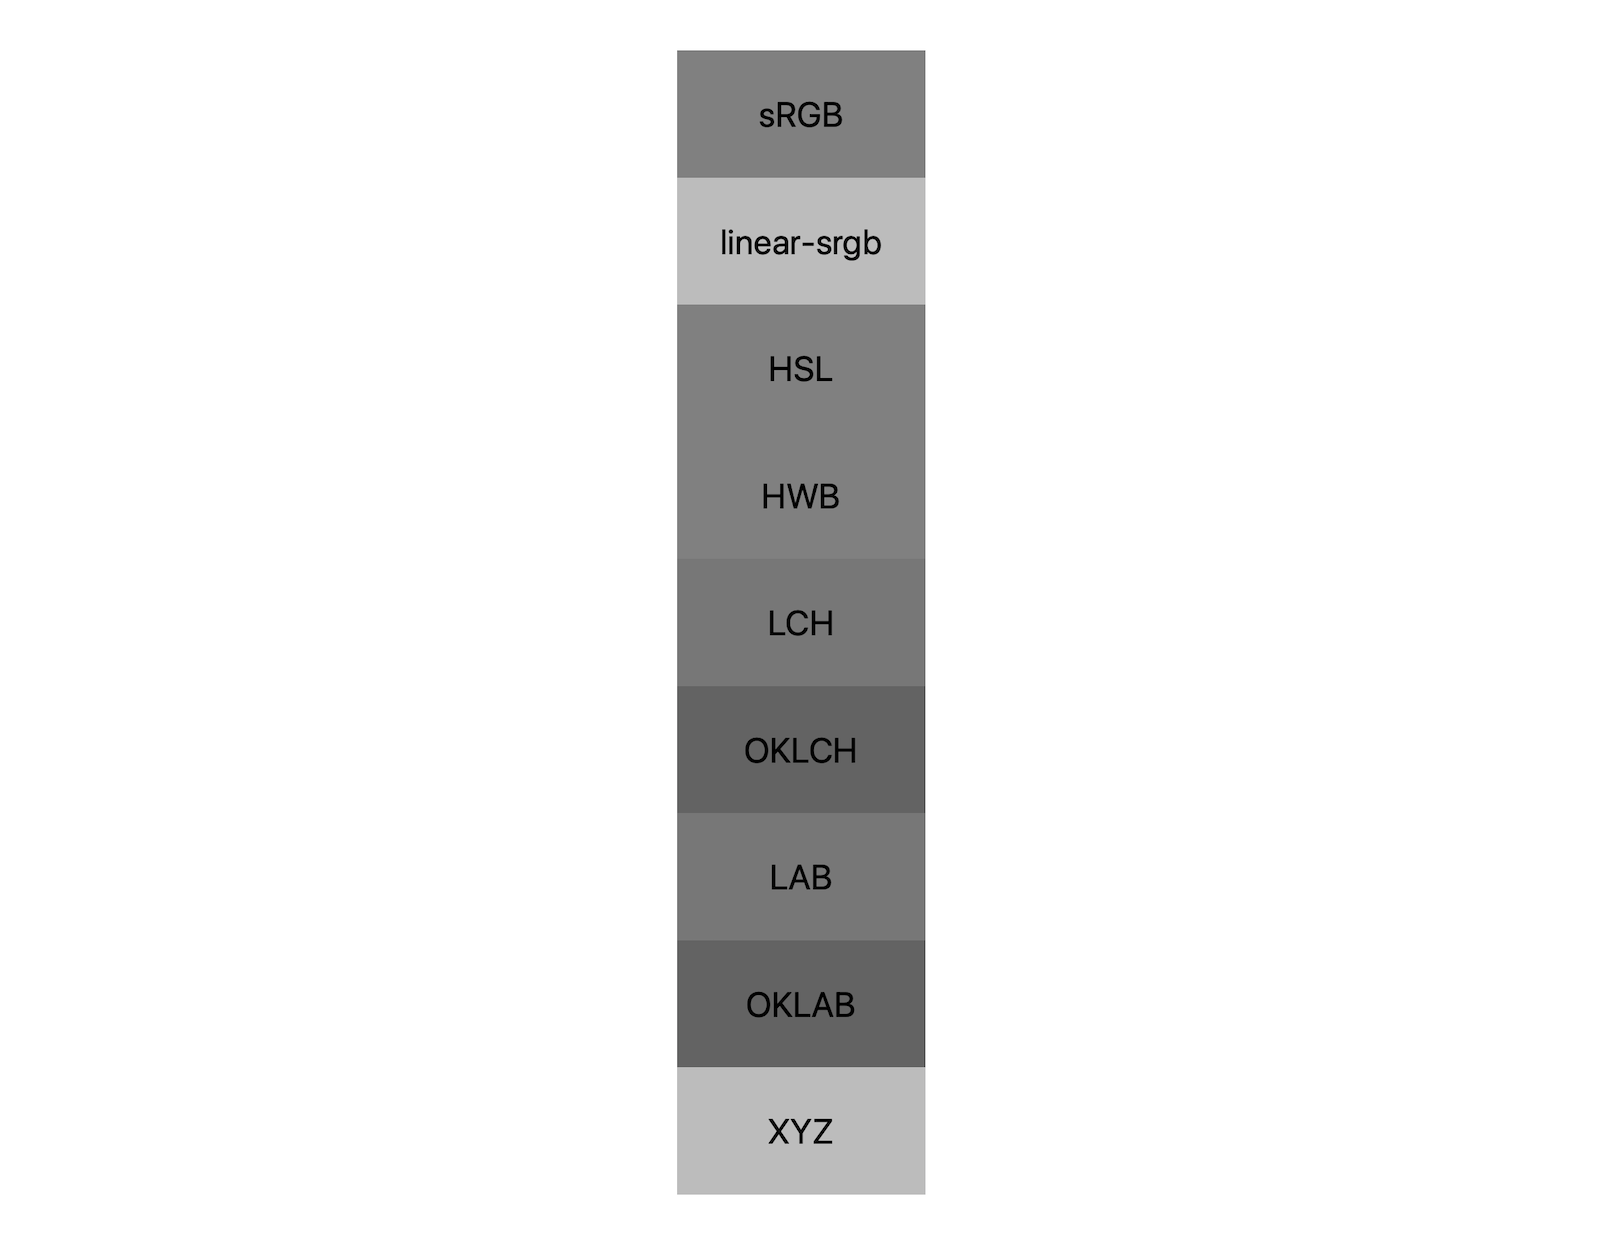 7 個色域 (srgb、Linear-srgb、lch、oklch、lab、oklab、xyz) 各自會顯示混合黑白的結果。圖片顯示大約 5 種不同色調，展現出每種顏色空間都能以不同的方式混成灰色。